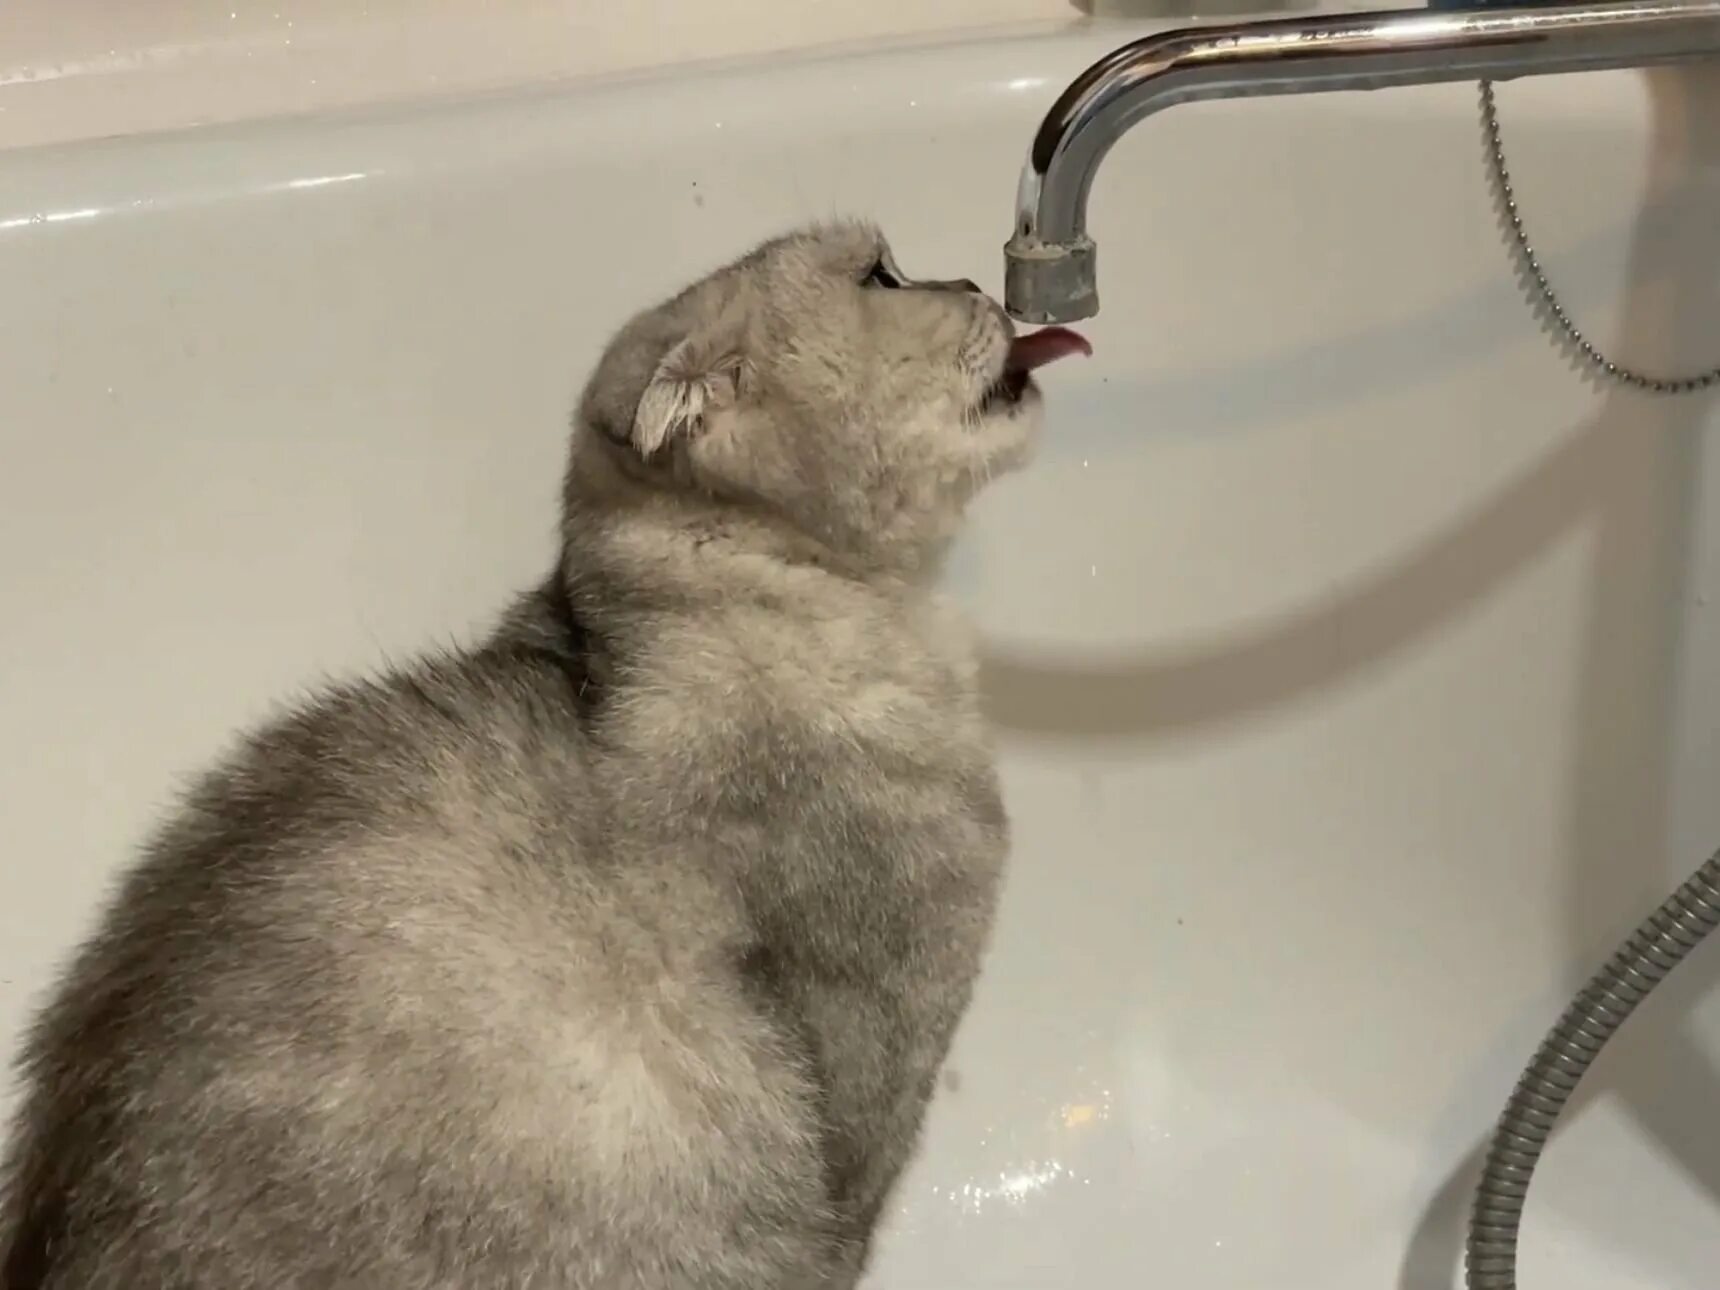 Нет воды. Кот пьет воду из под крана. Котик лижет воду из под крана. Кот пьет яйцевую воду. Вода бежит в ванне